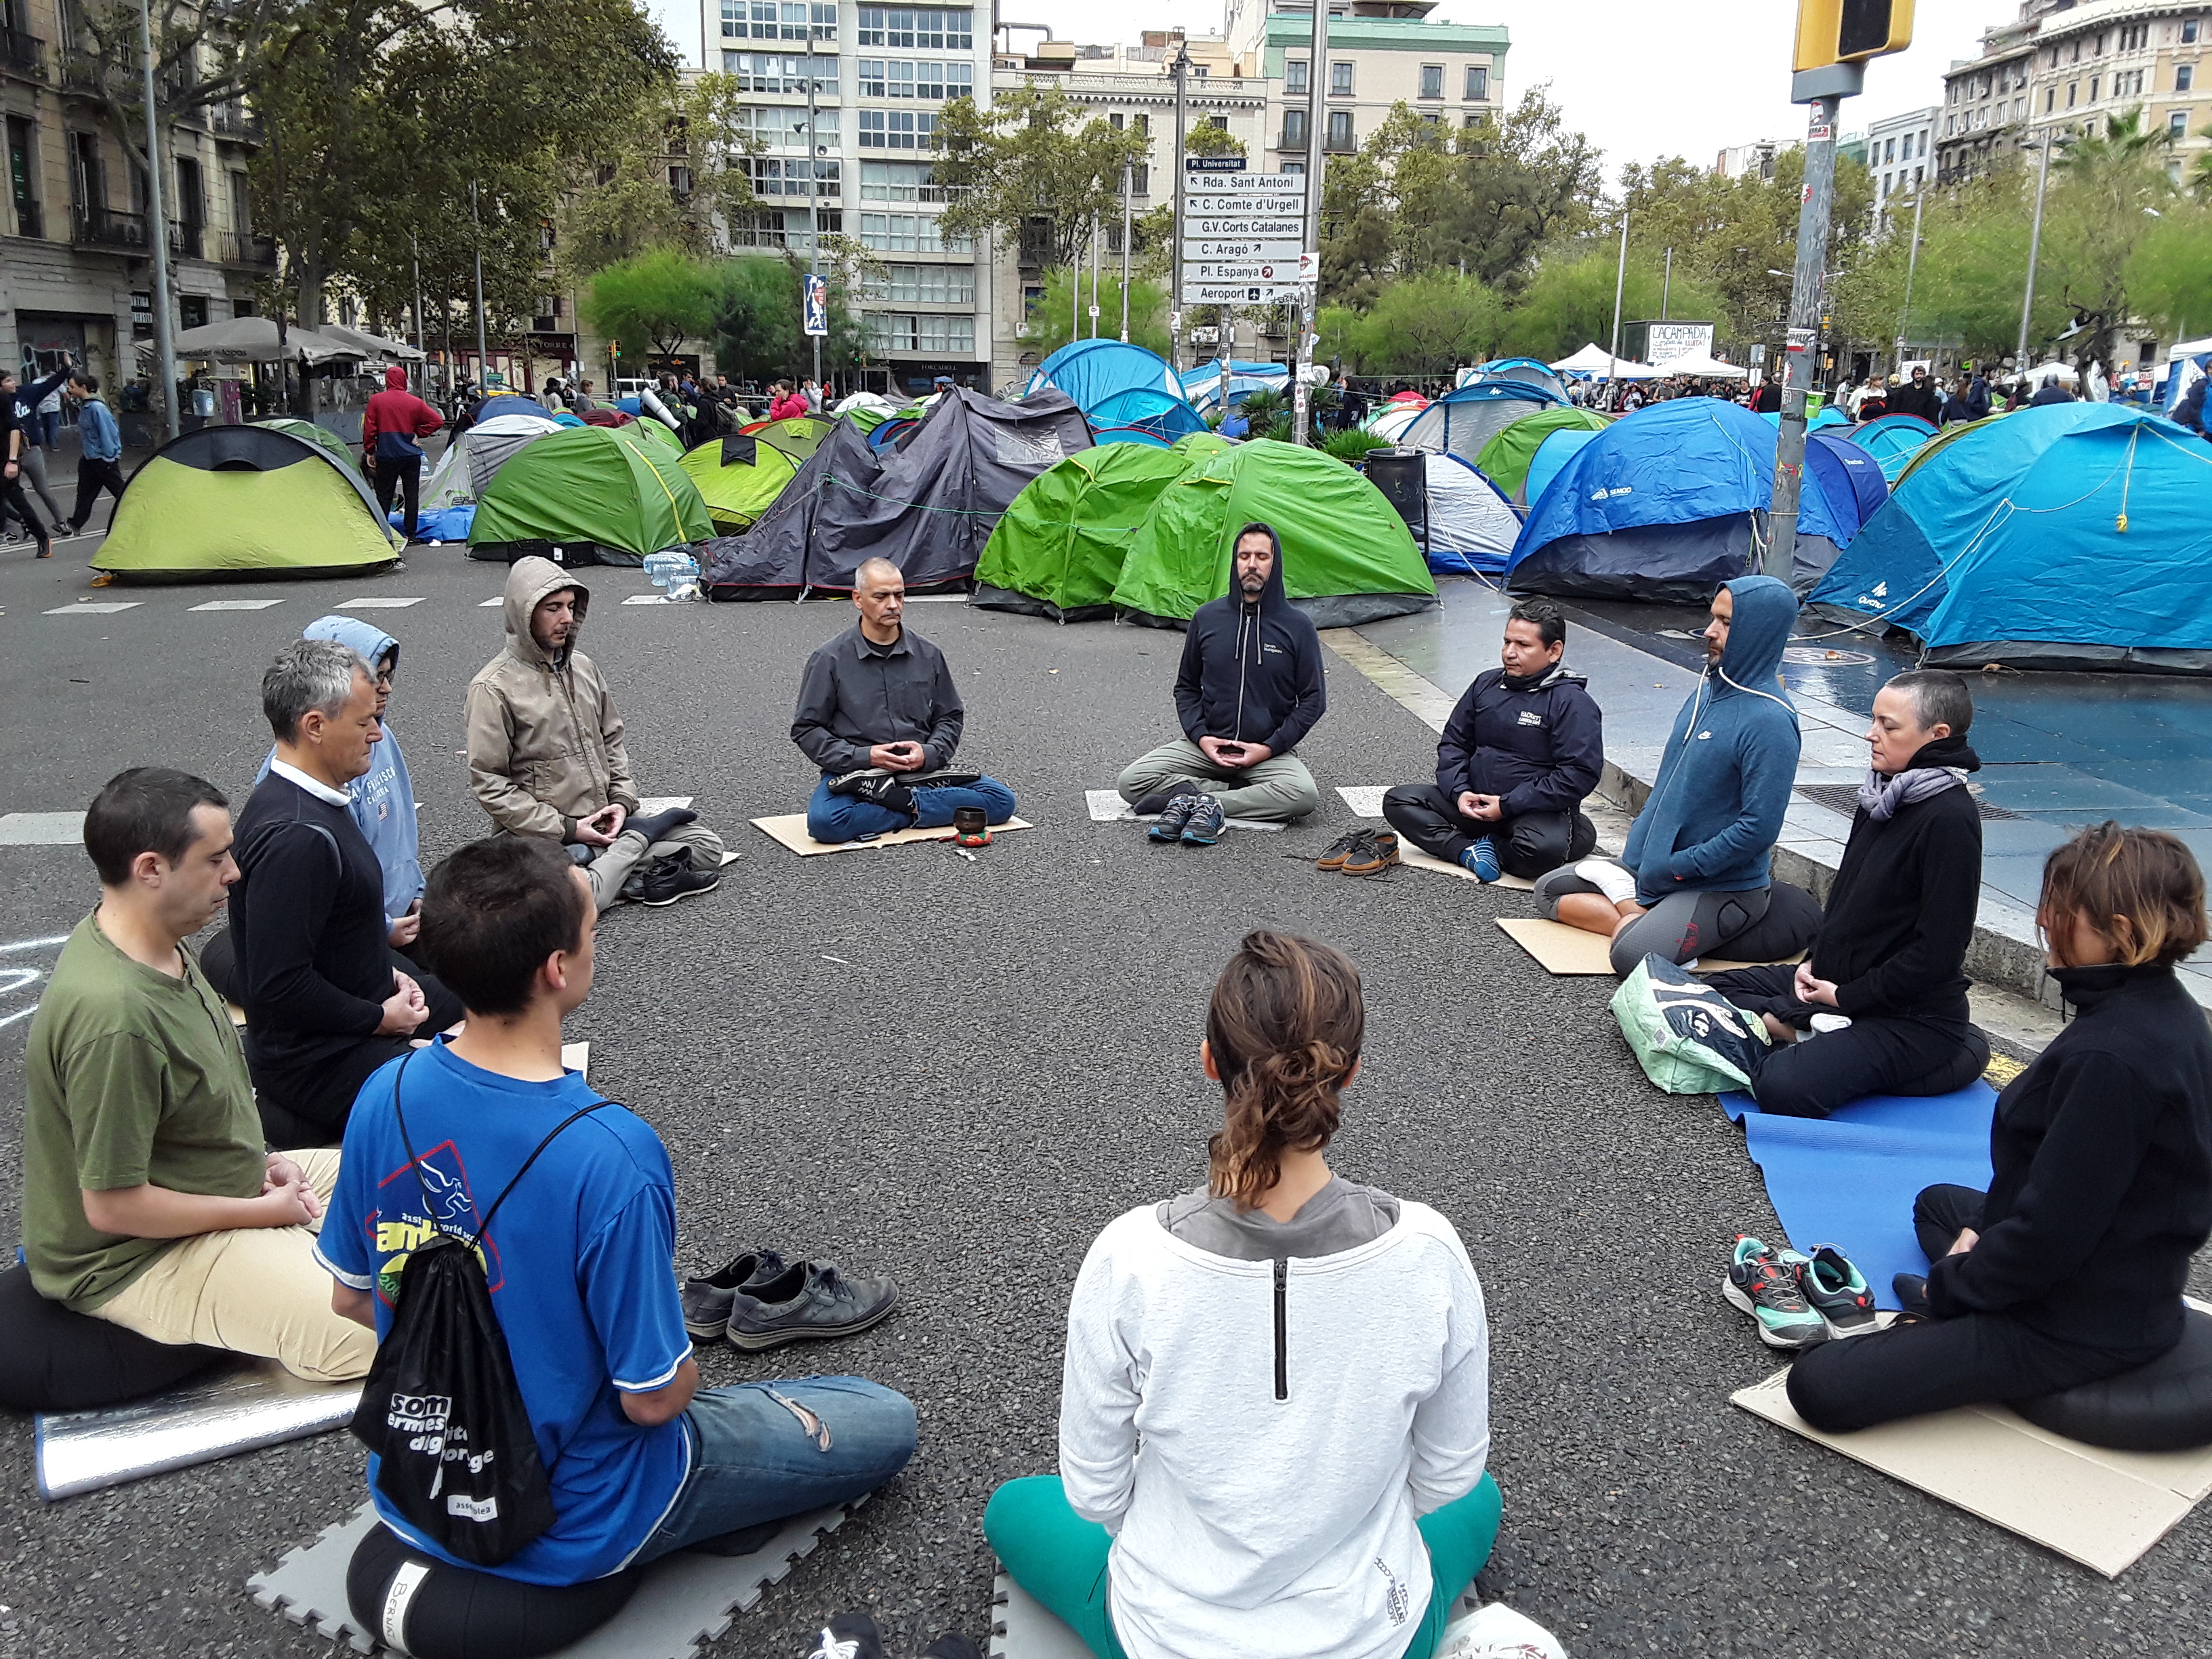 Dojo Zen | Budismo Zen en Barcelona | [Vídeo] Acció Zen A lacampada jove de plaça Universitat